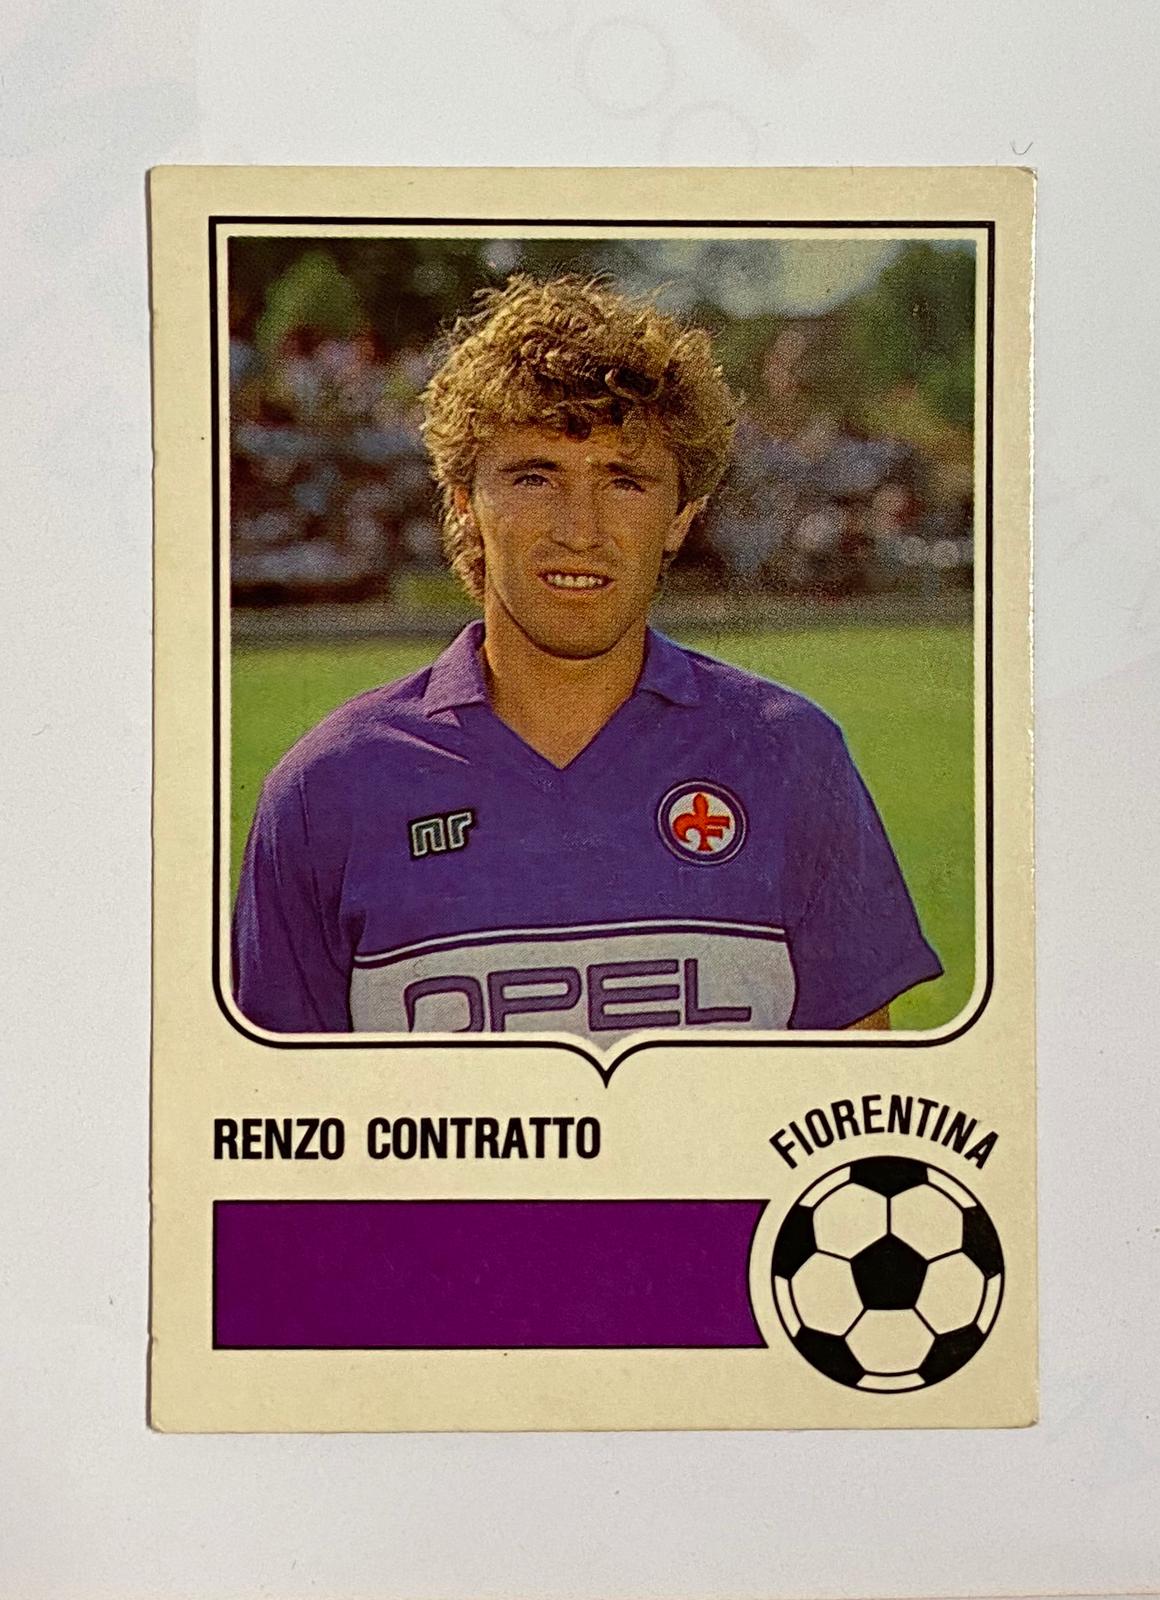 Renzo Contratto Fiorentina Figurine Card Forza Goal 1985 - 1986 Excellent